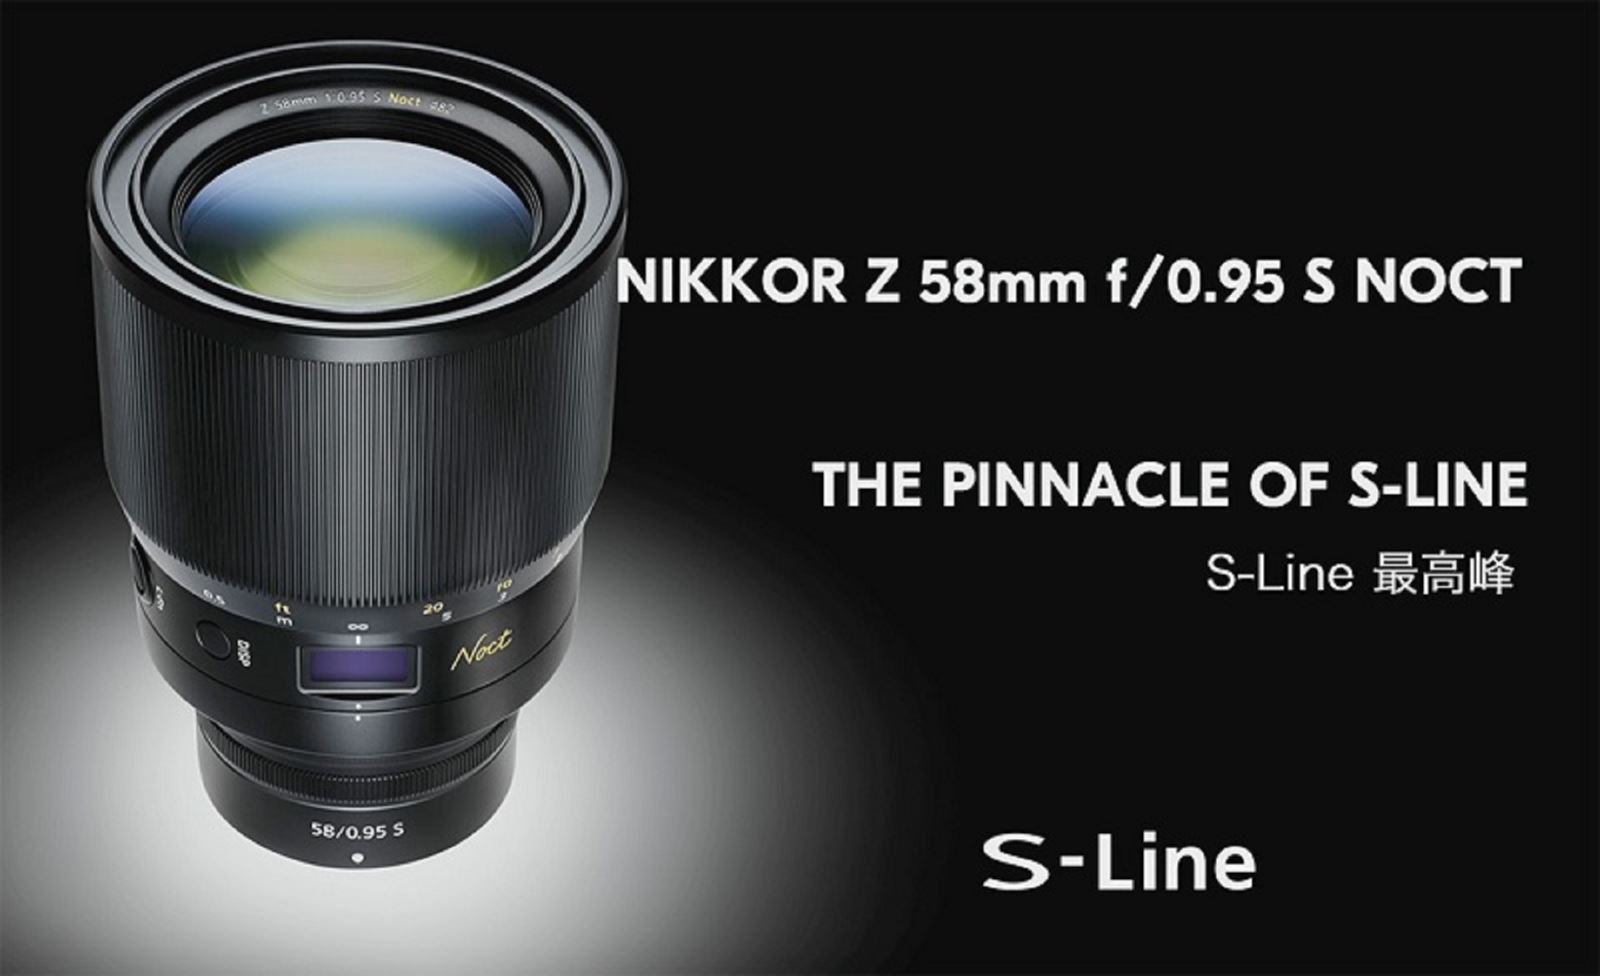 Máy ảnh Z50 và ống kính 58mm F0.95 Noct của Nikon sẽ có giá là 1000 USD và 8000 USD